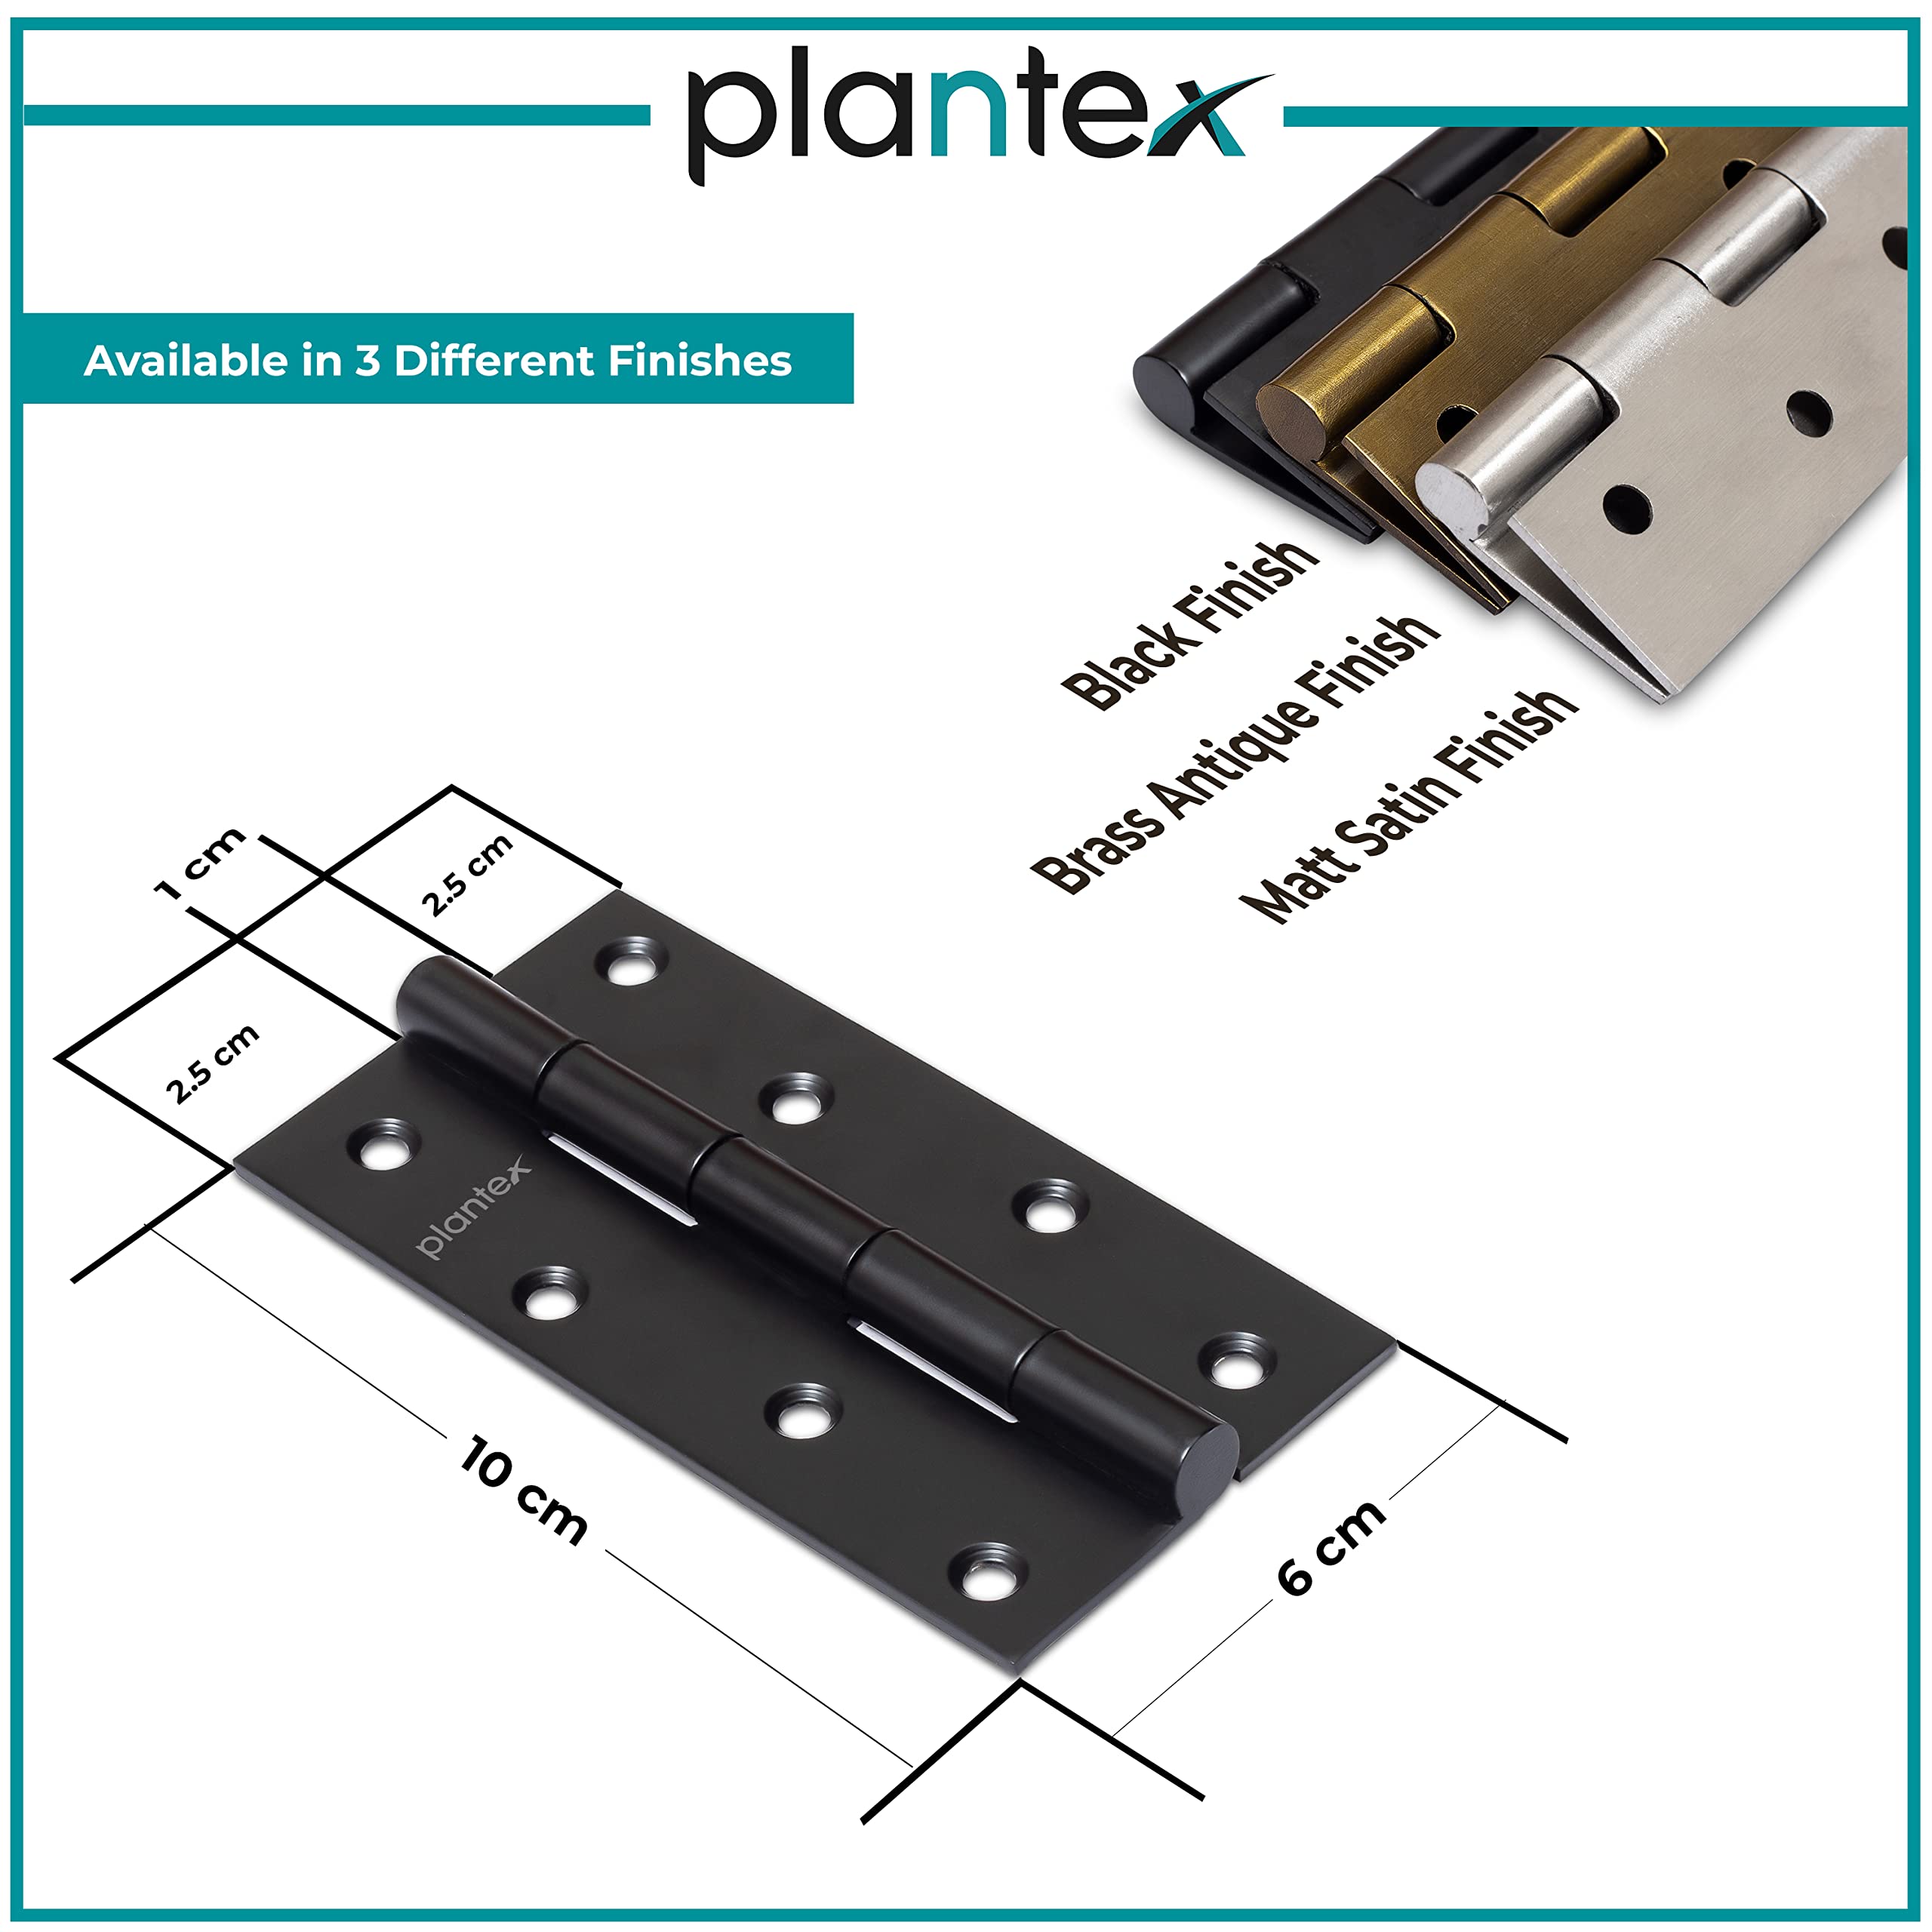 Plantex Heavy Duty Stainless Steel Door Butt Hinges 4 inch x 14 Gauge/2 mm Thickness Home/Office/Hotel for Main Door/Bedroom/Kitchen/Bathroom - Pack of 24 (Black)